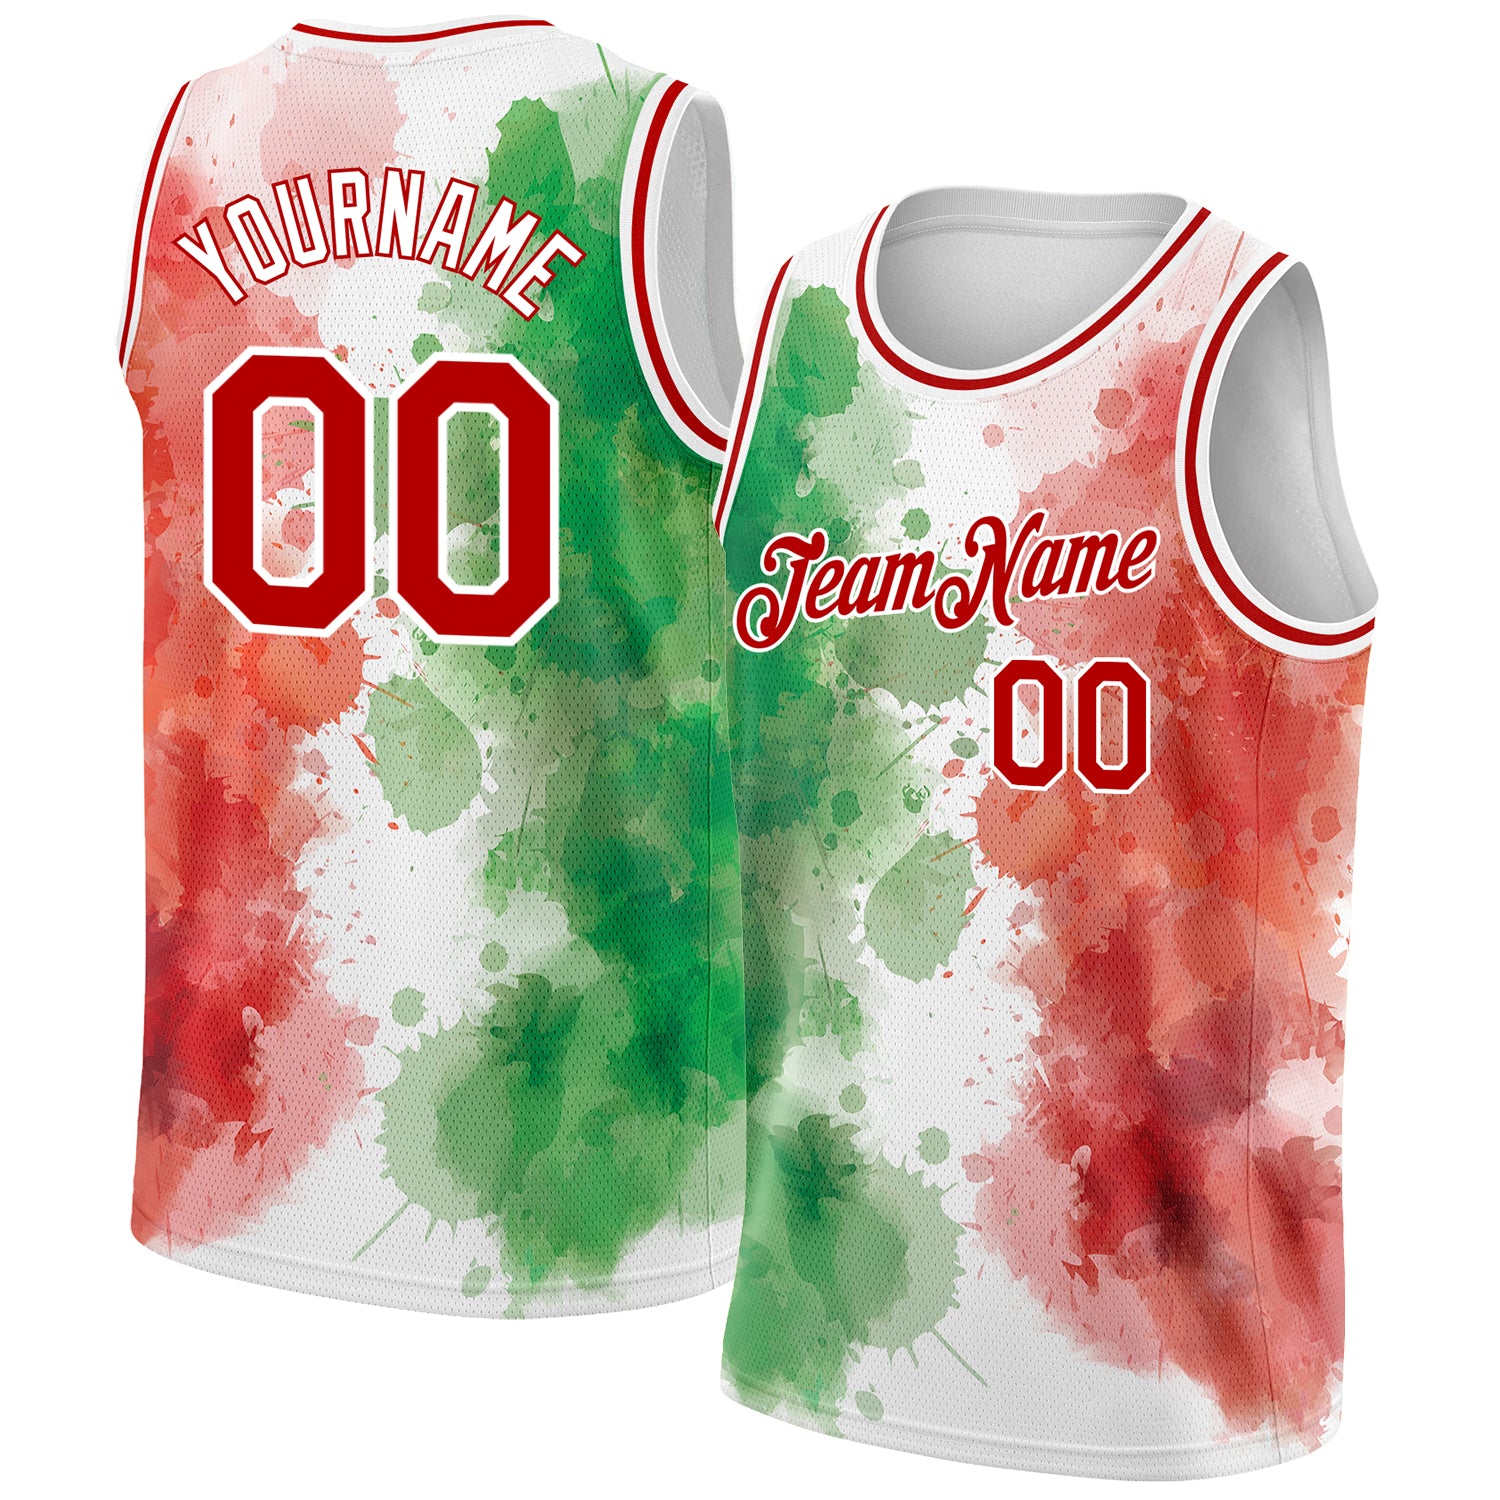 new nba basketball jersey design